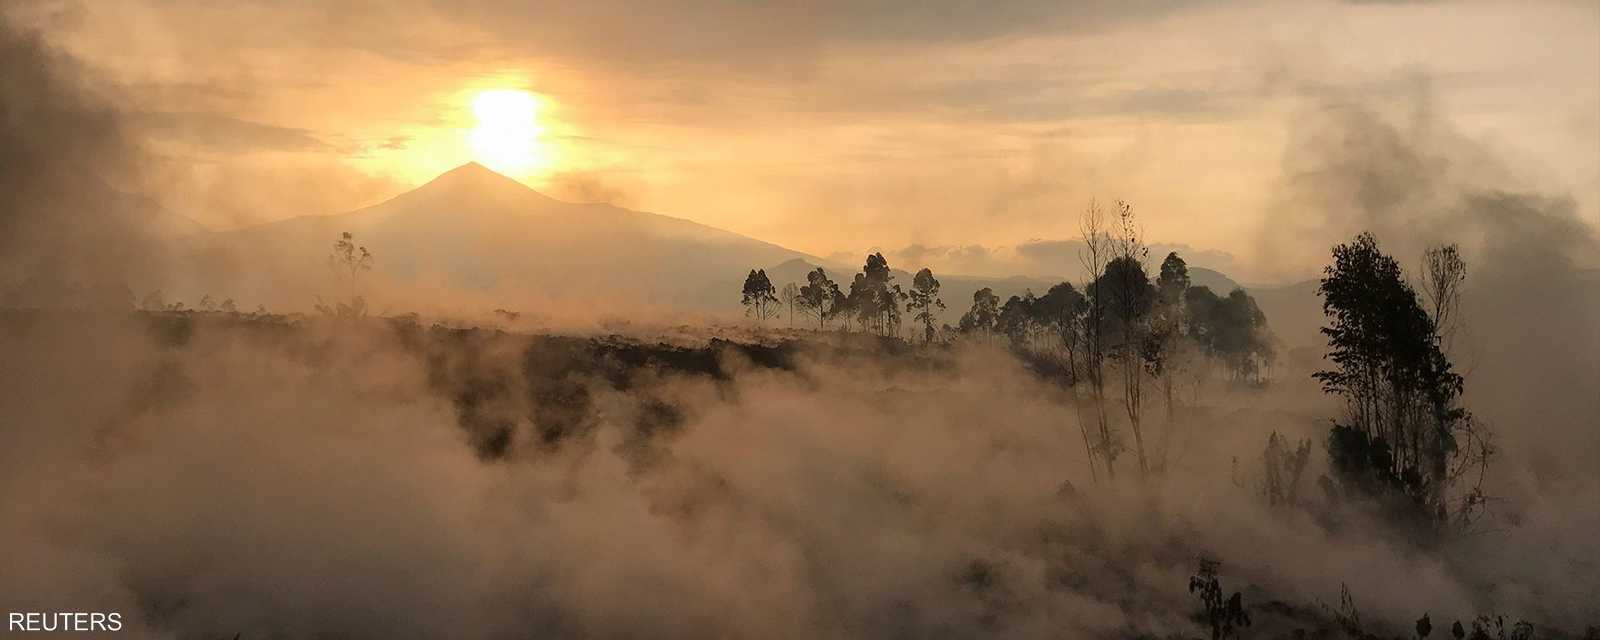 مشهد في الصباح لمنطقة بركان نييراغونغو